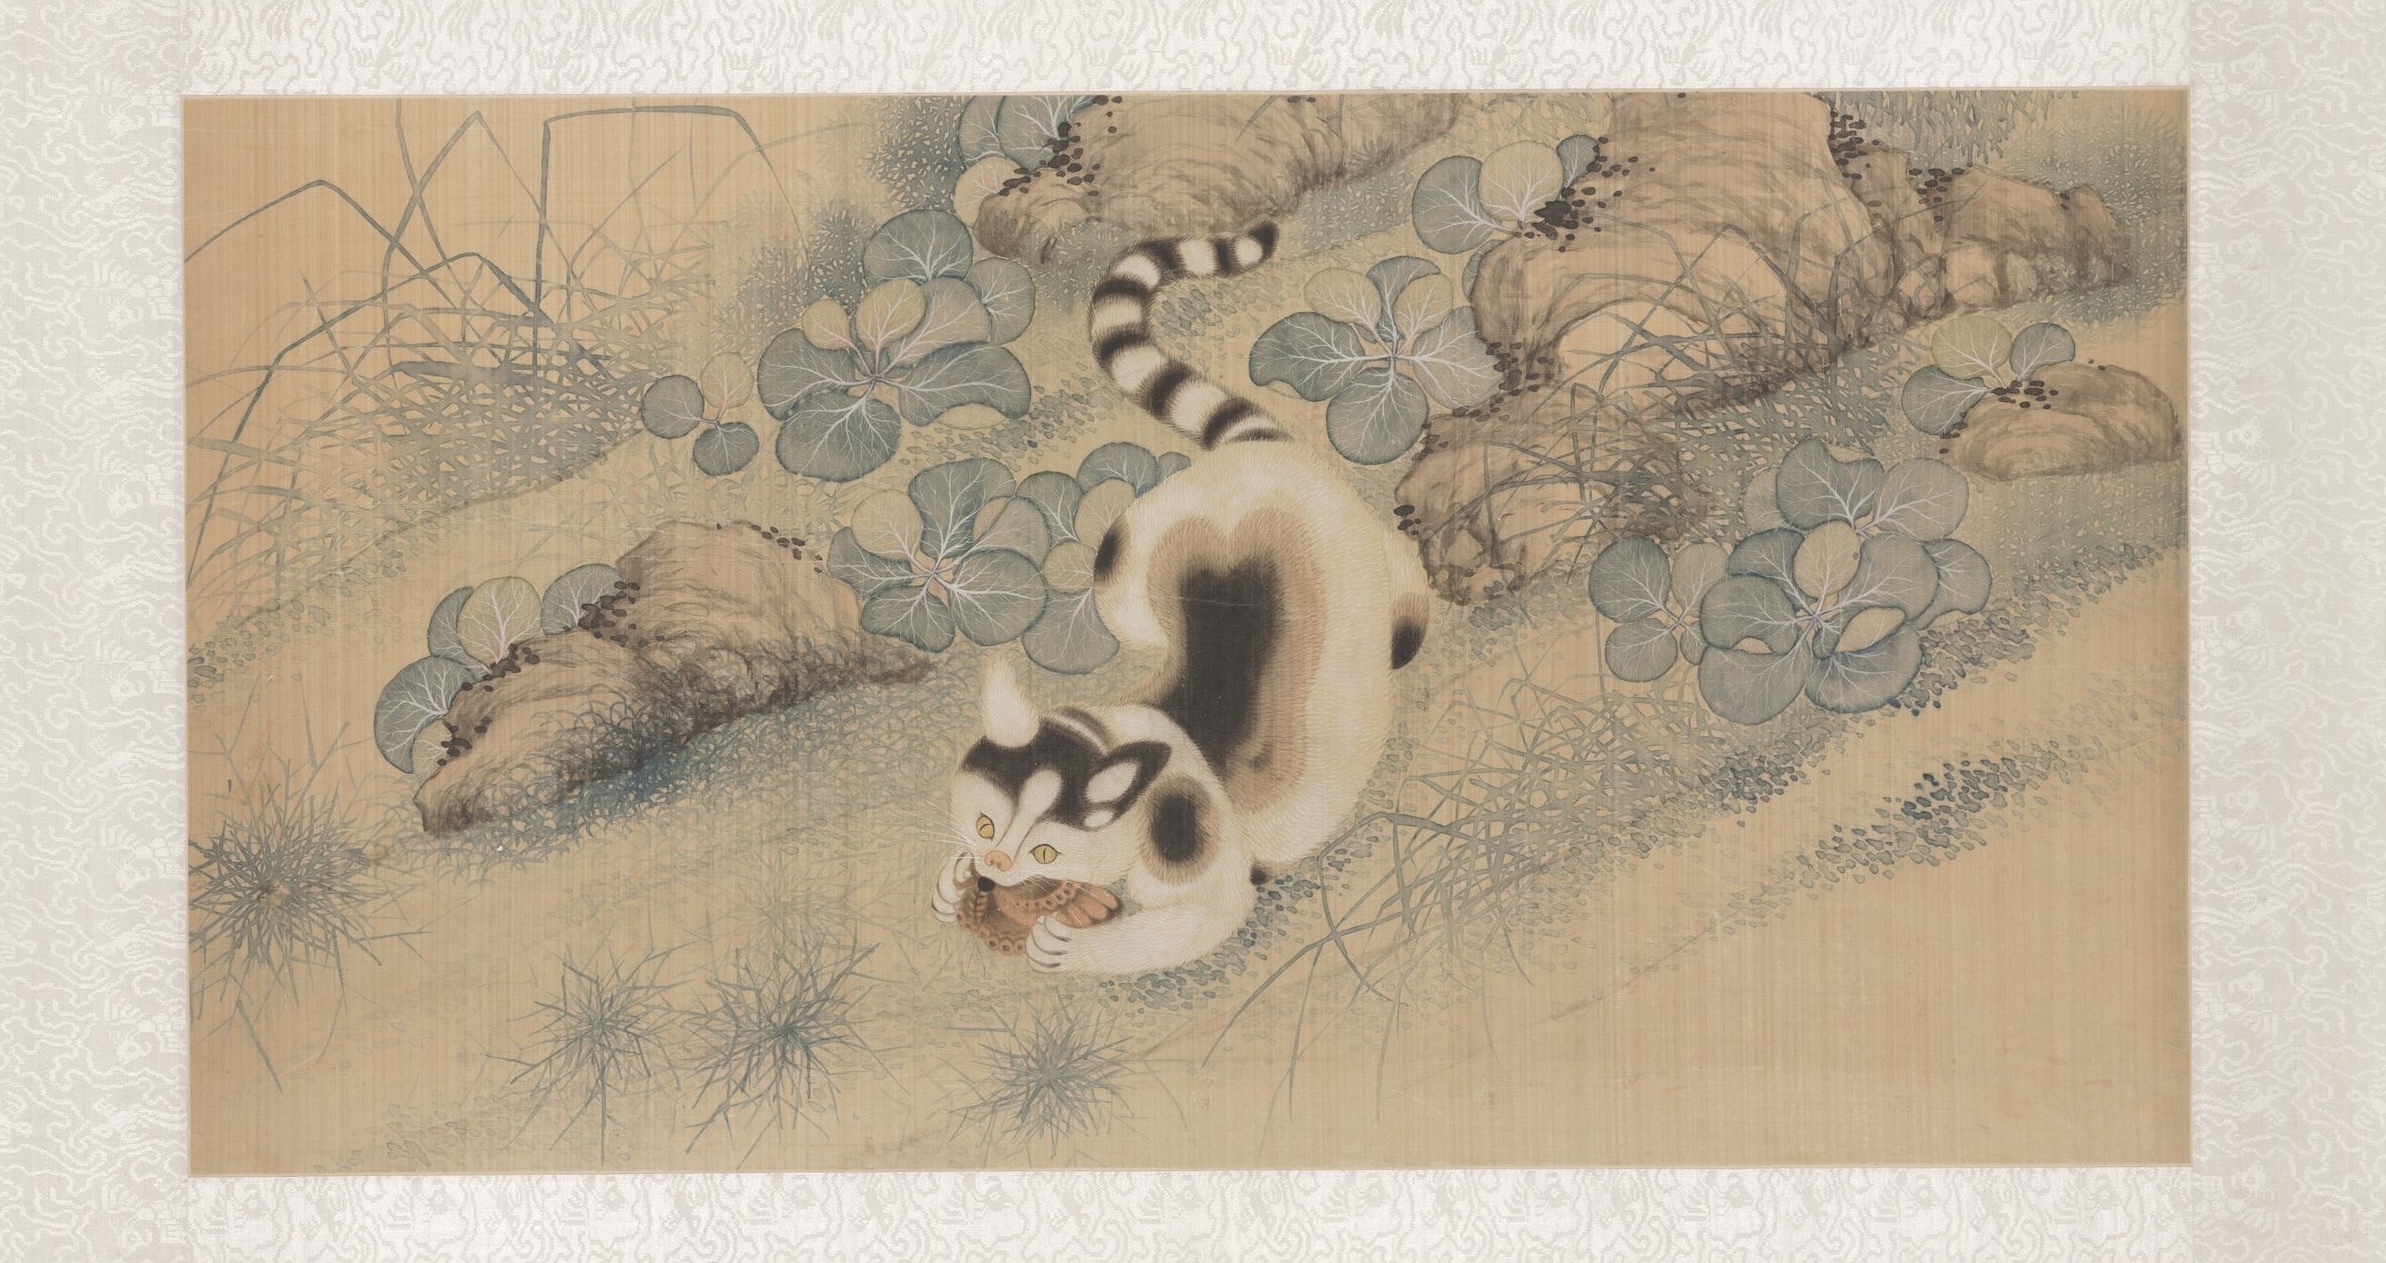 芥子蝶猫図 by Yun Bing - 1683年 - 46 × 90 × 0.5 cm 